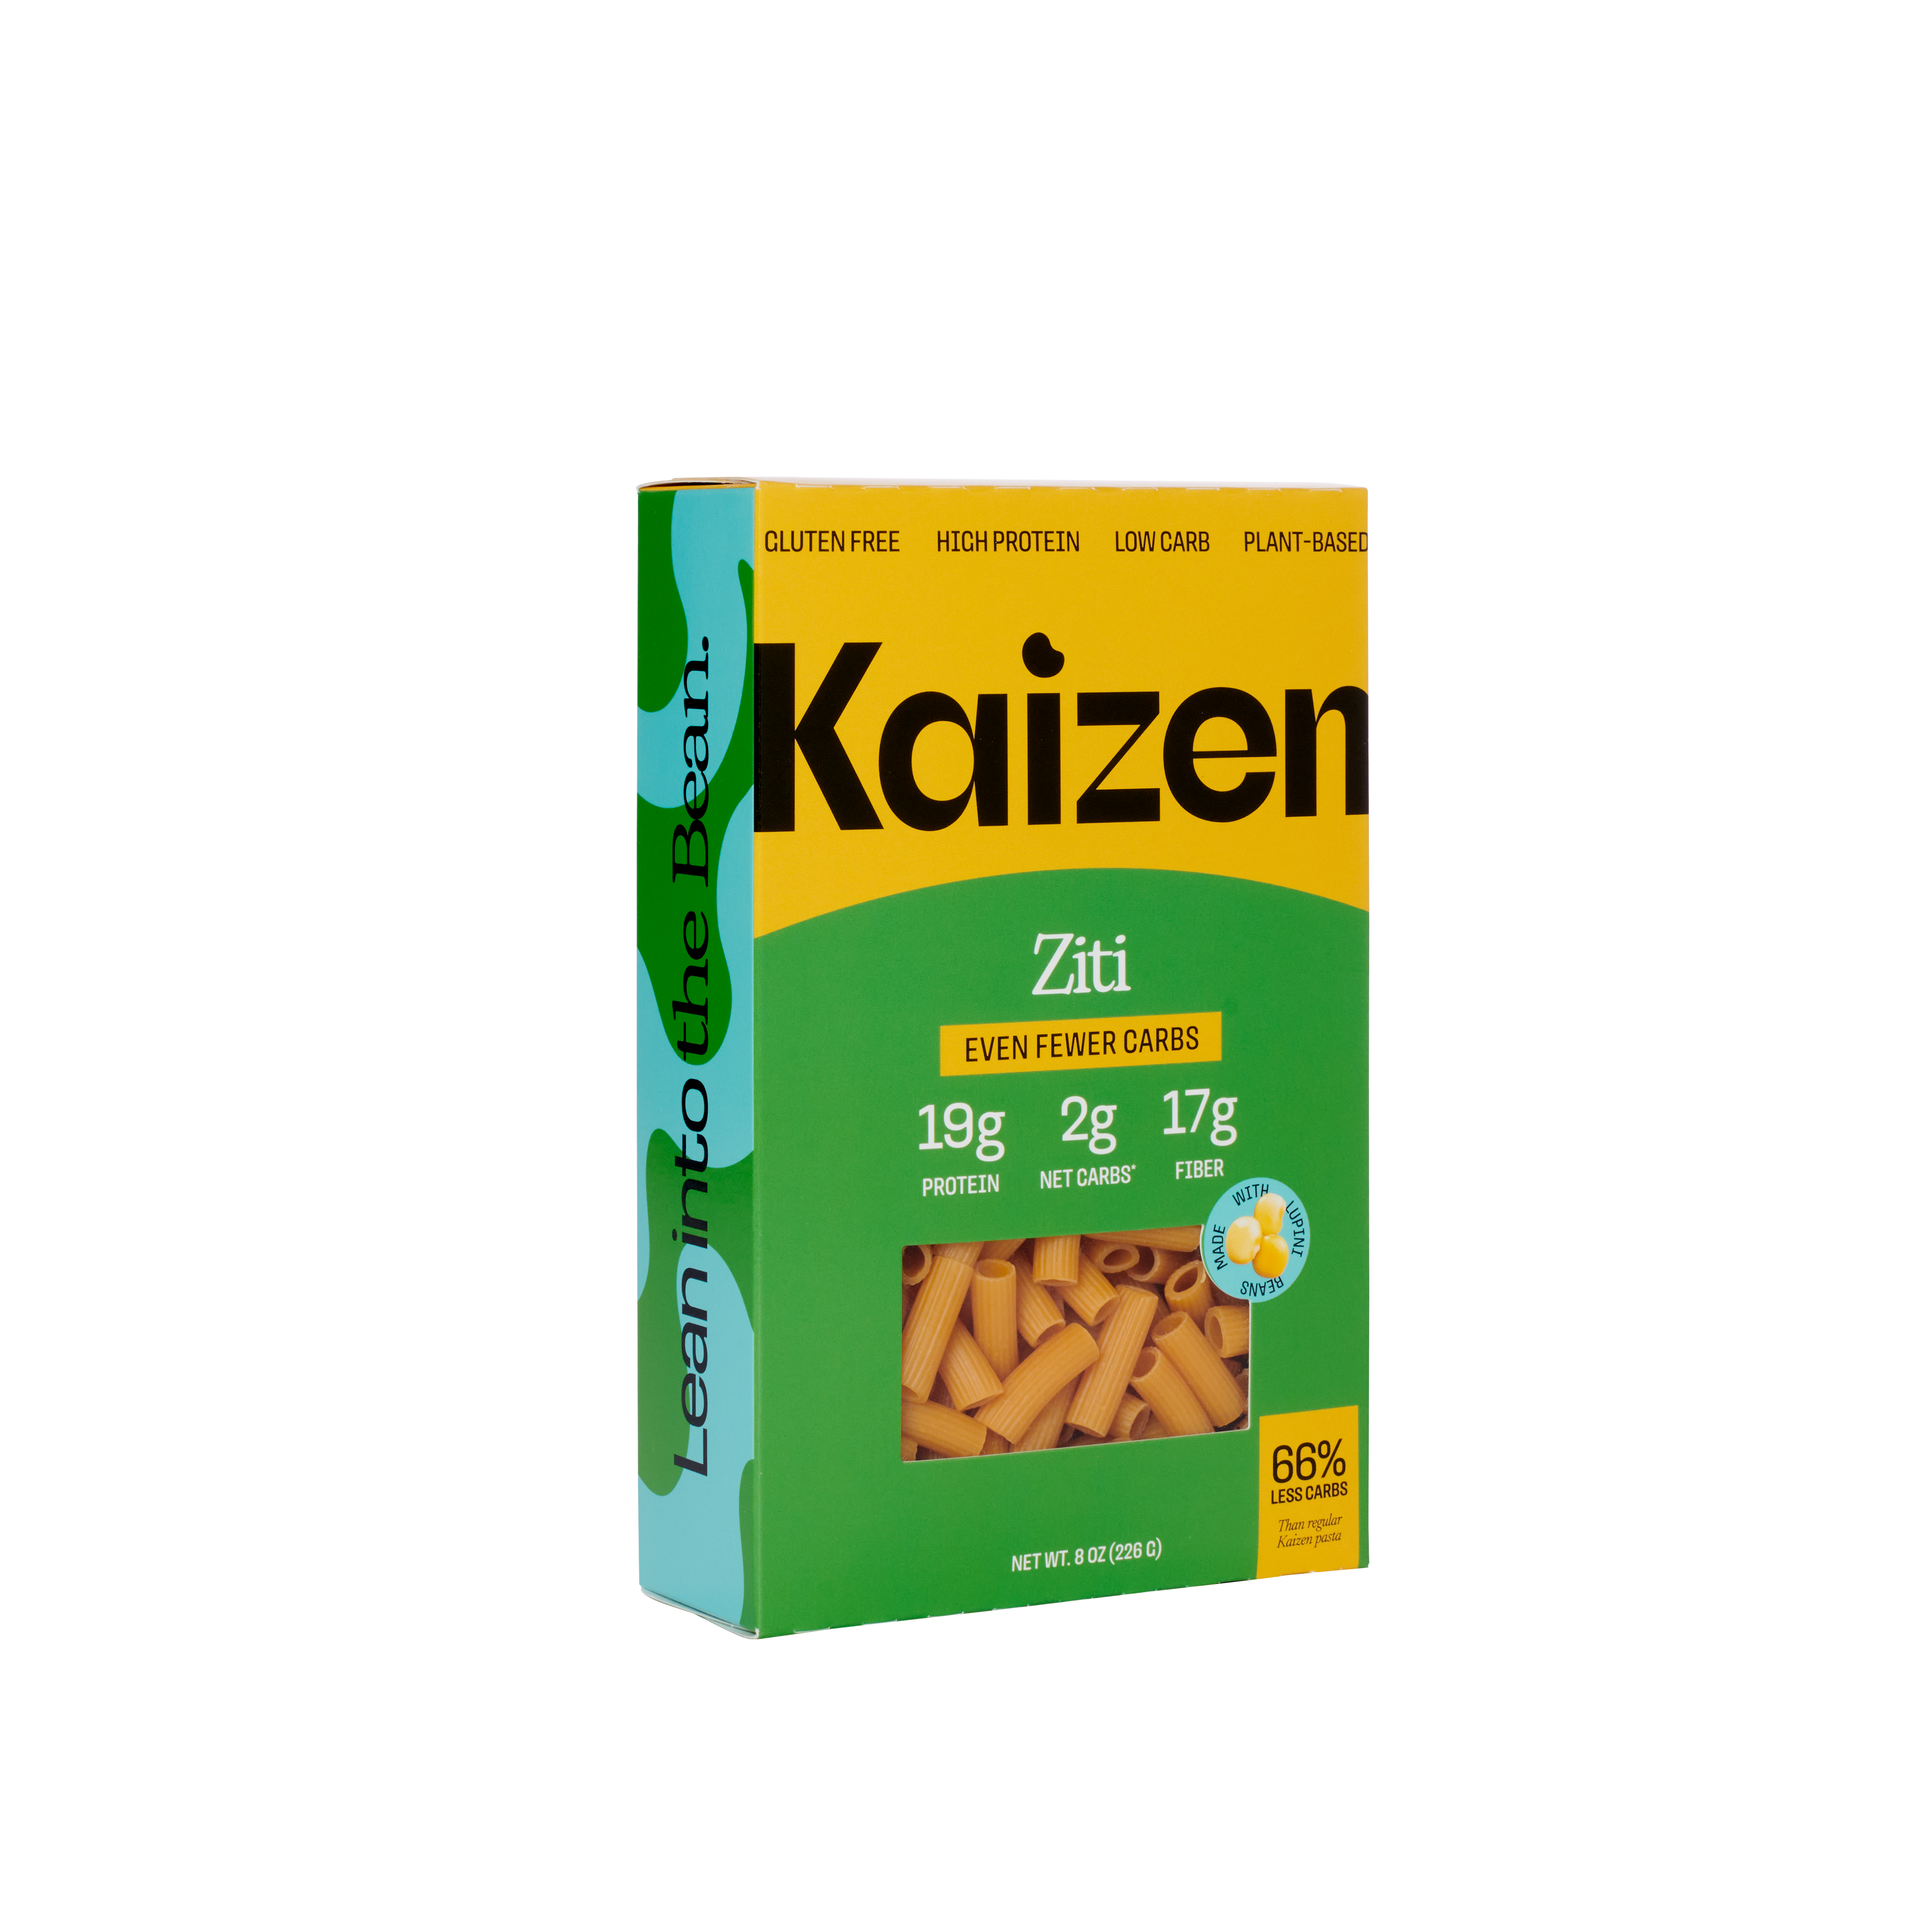 Kaizen Pasta - Ziti - 2 NET 22 units per case 8.0 oz